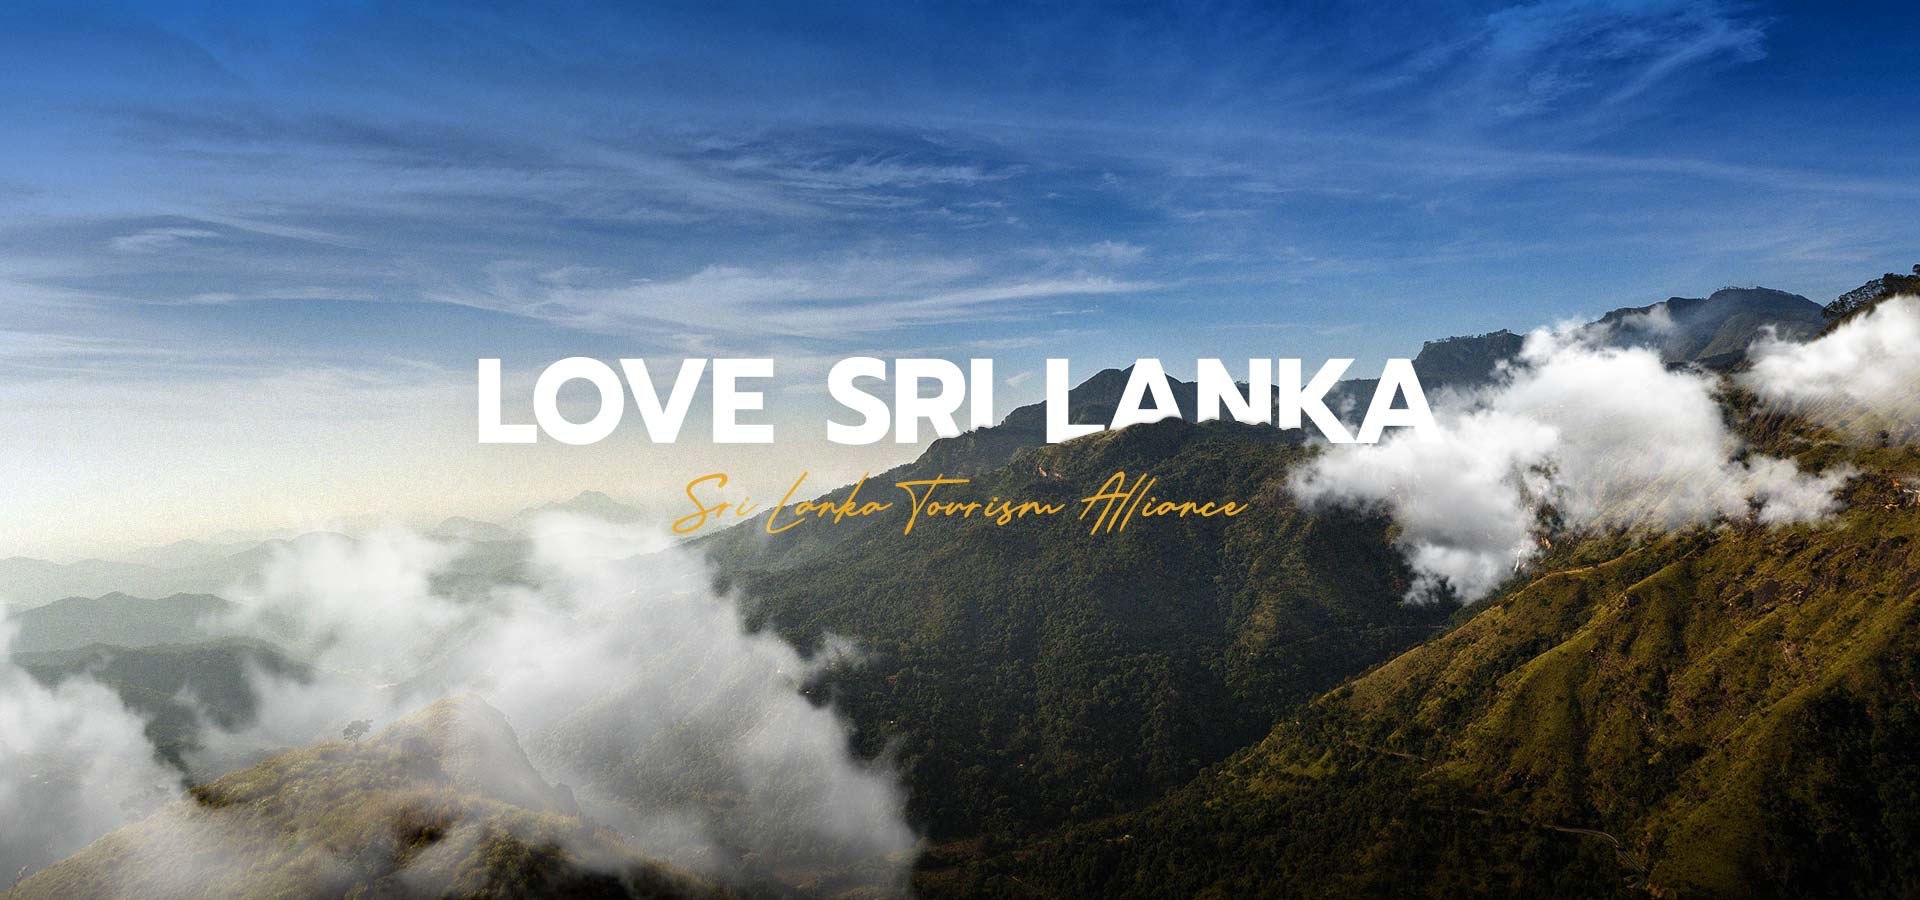 Love Sri Lanka